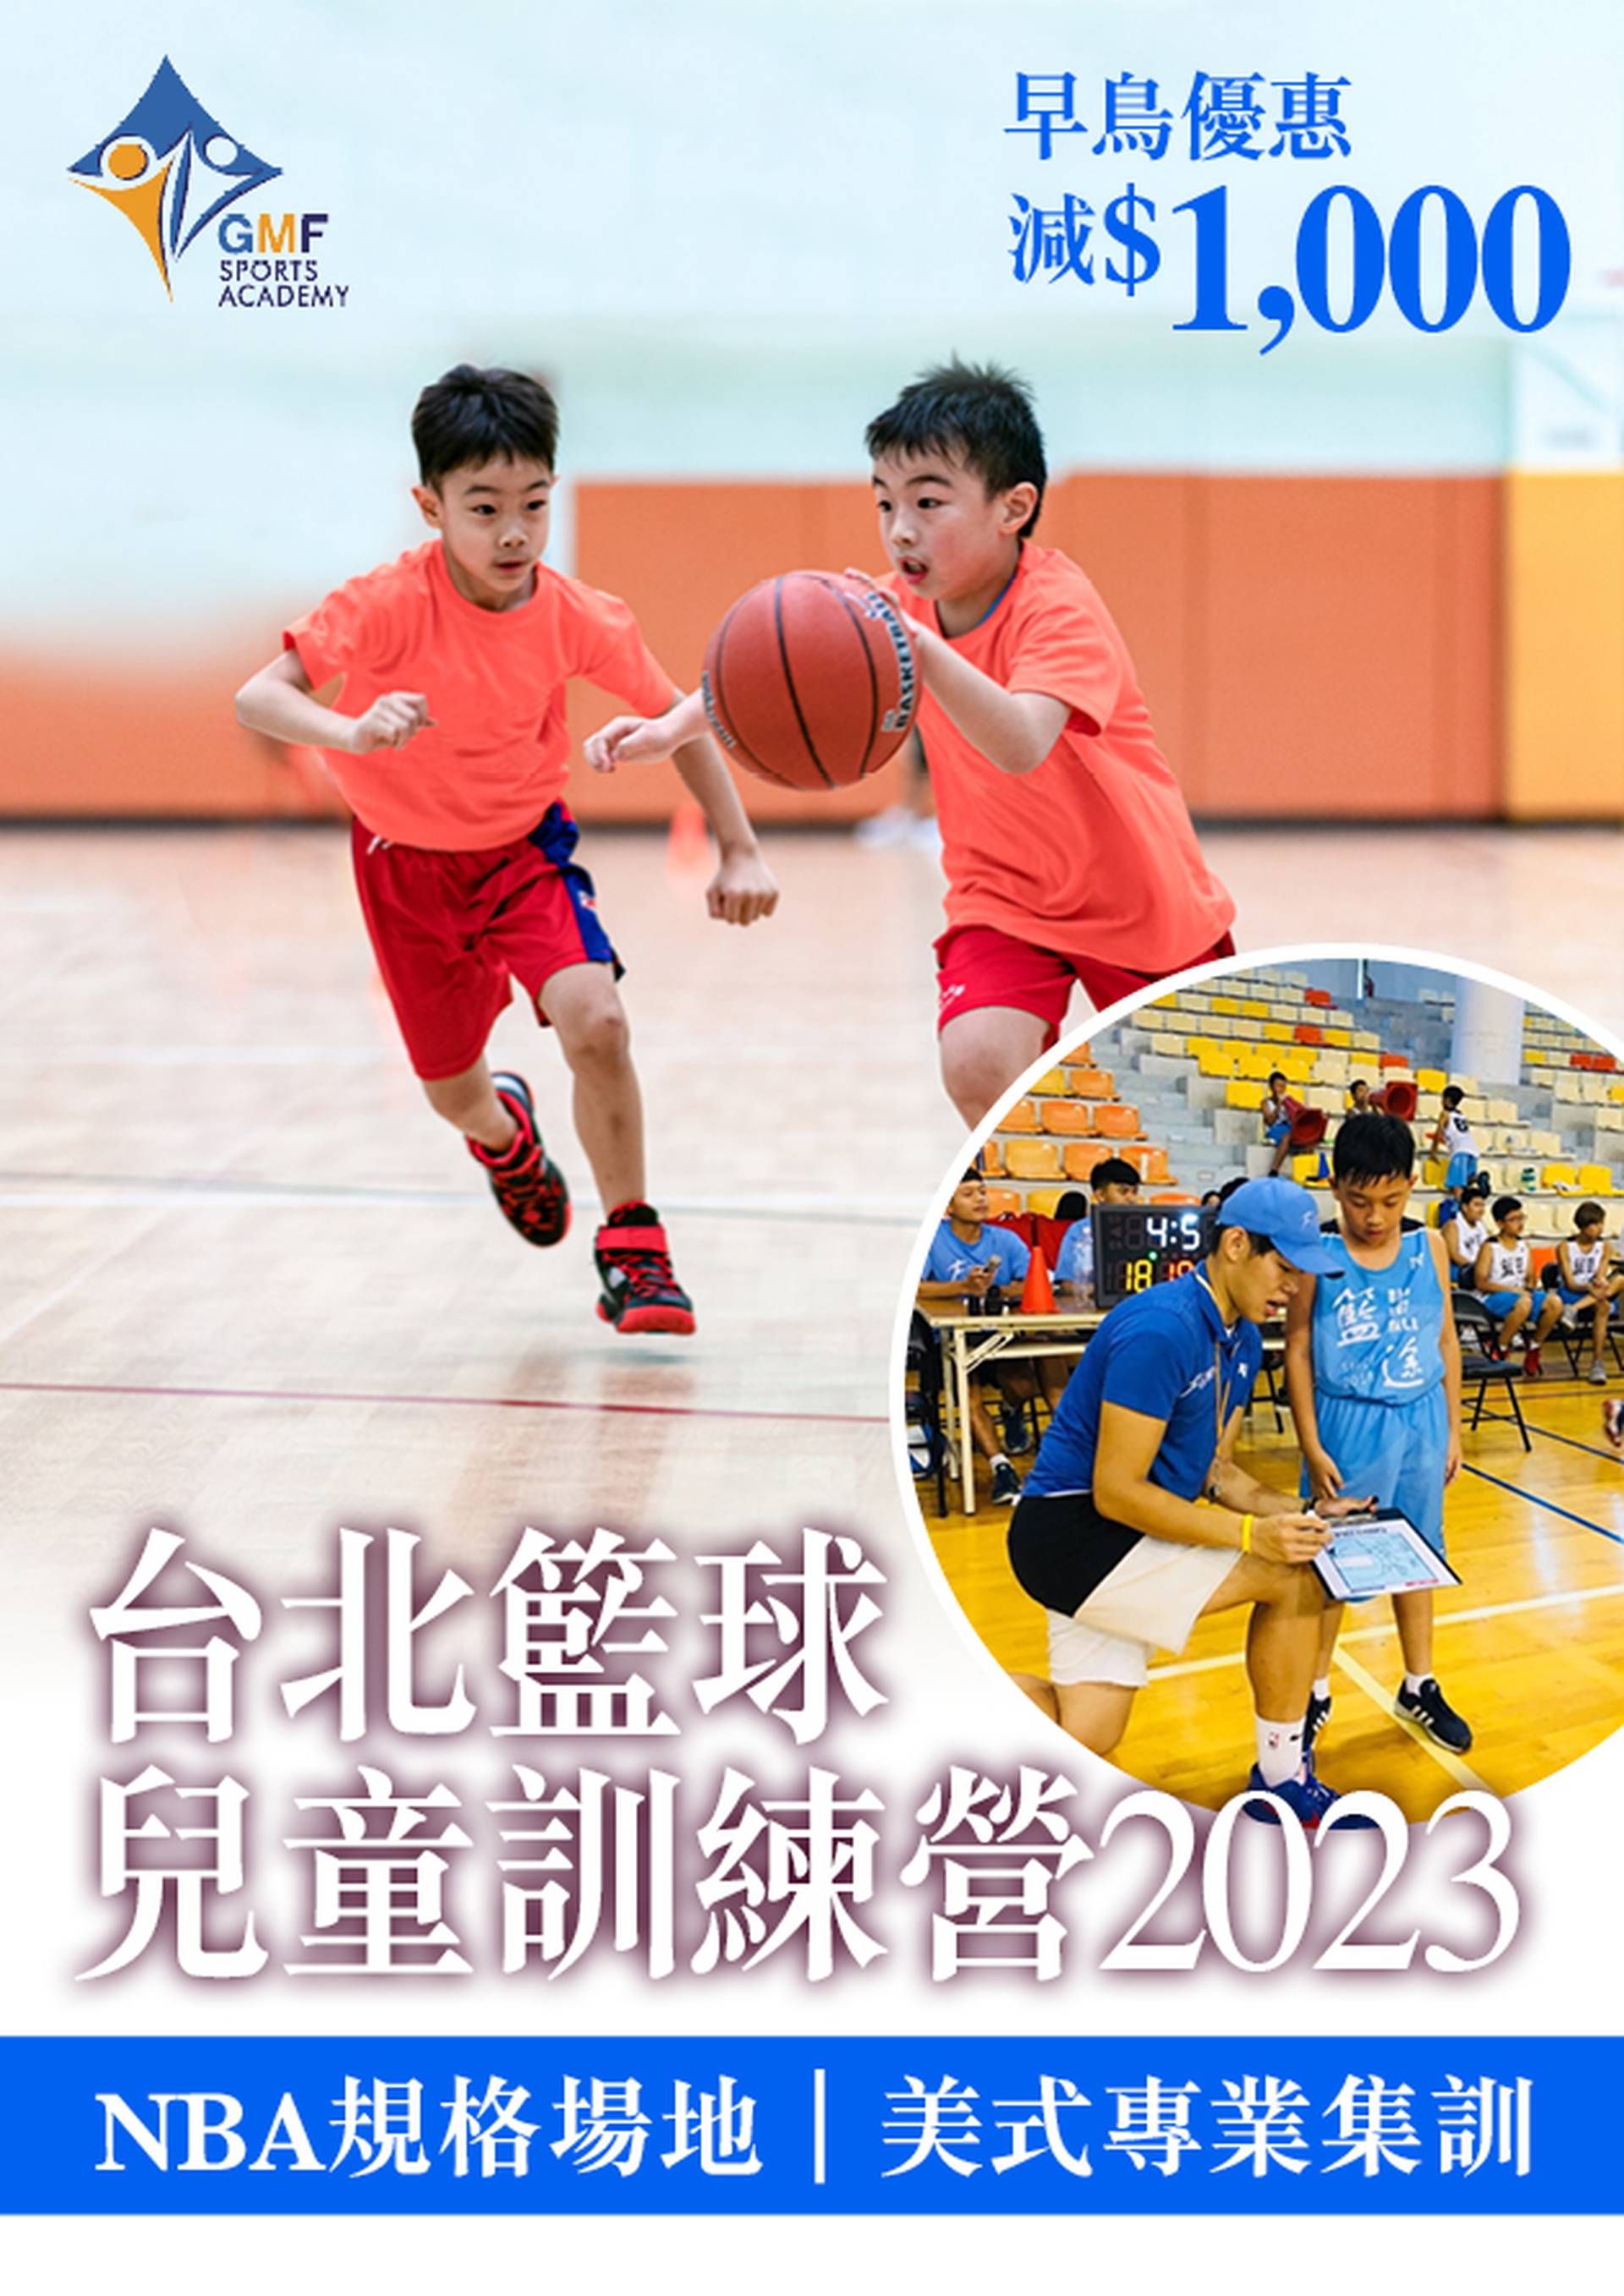 暑期活動 2023｜台北籃球兒童訓練營2023｜NBA規格場地｜GMF｜早烏優惠減$1000